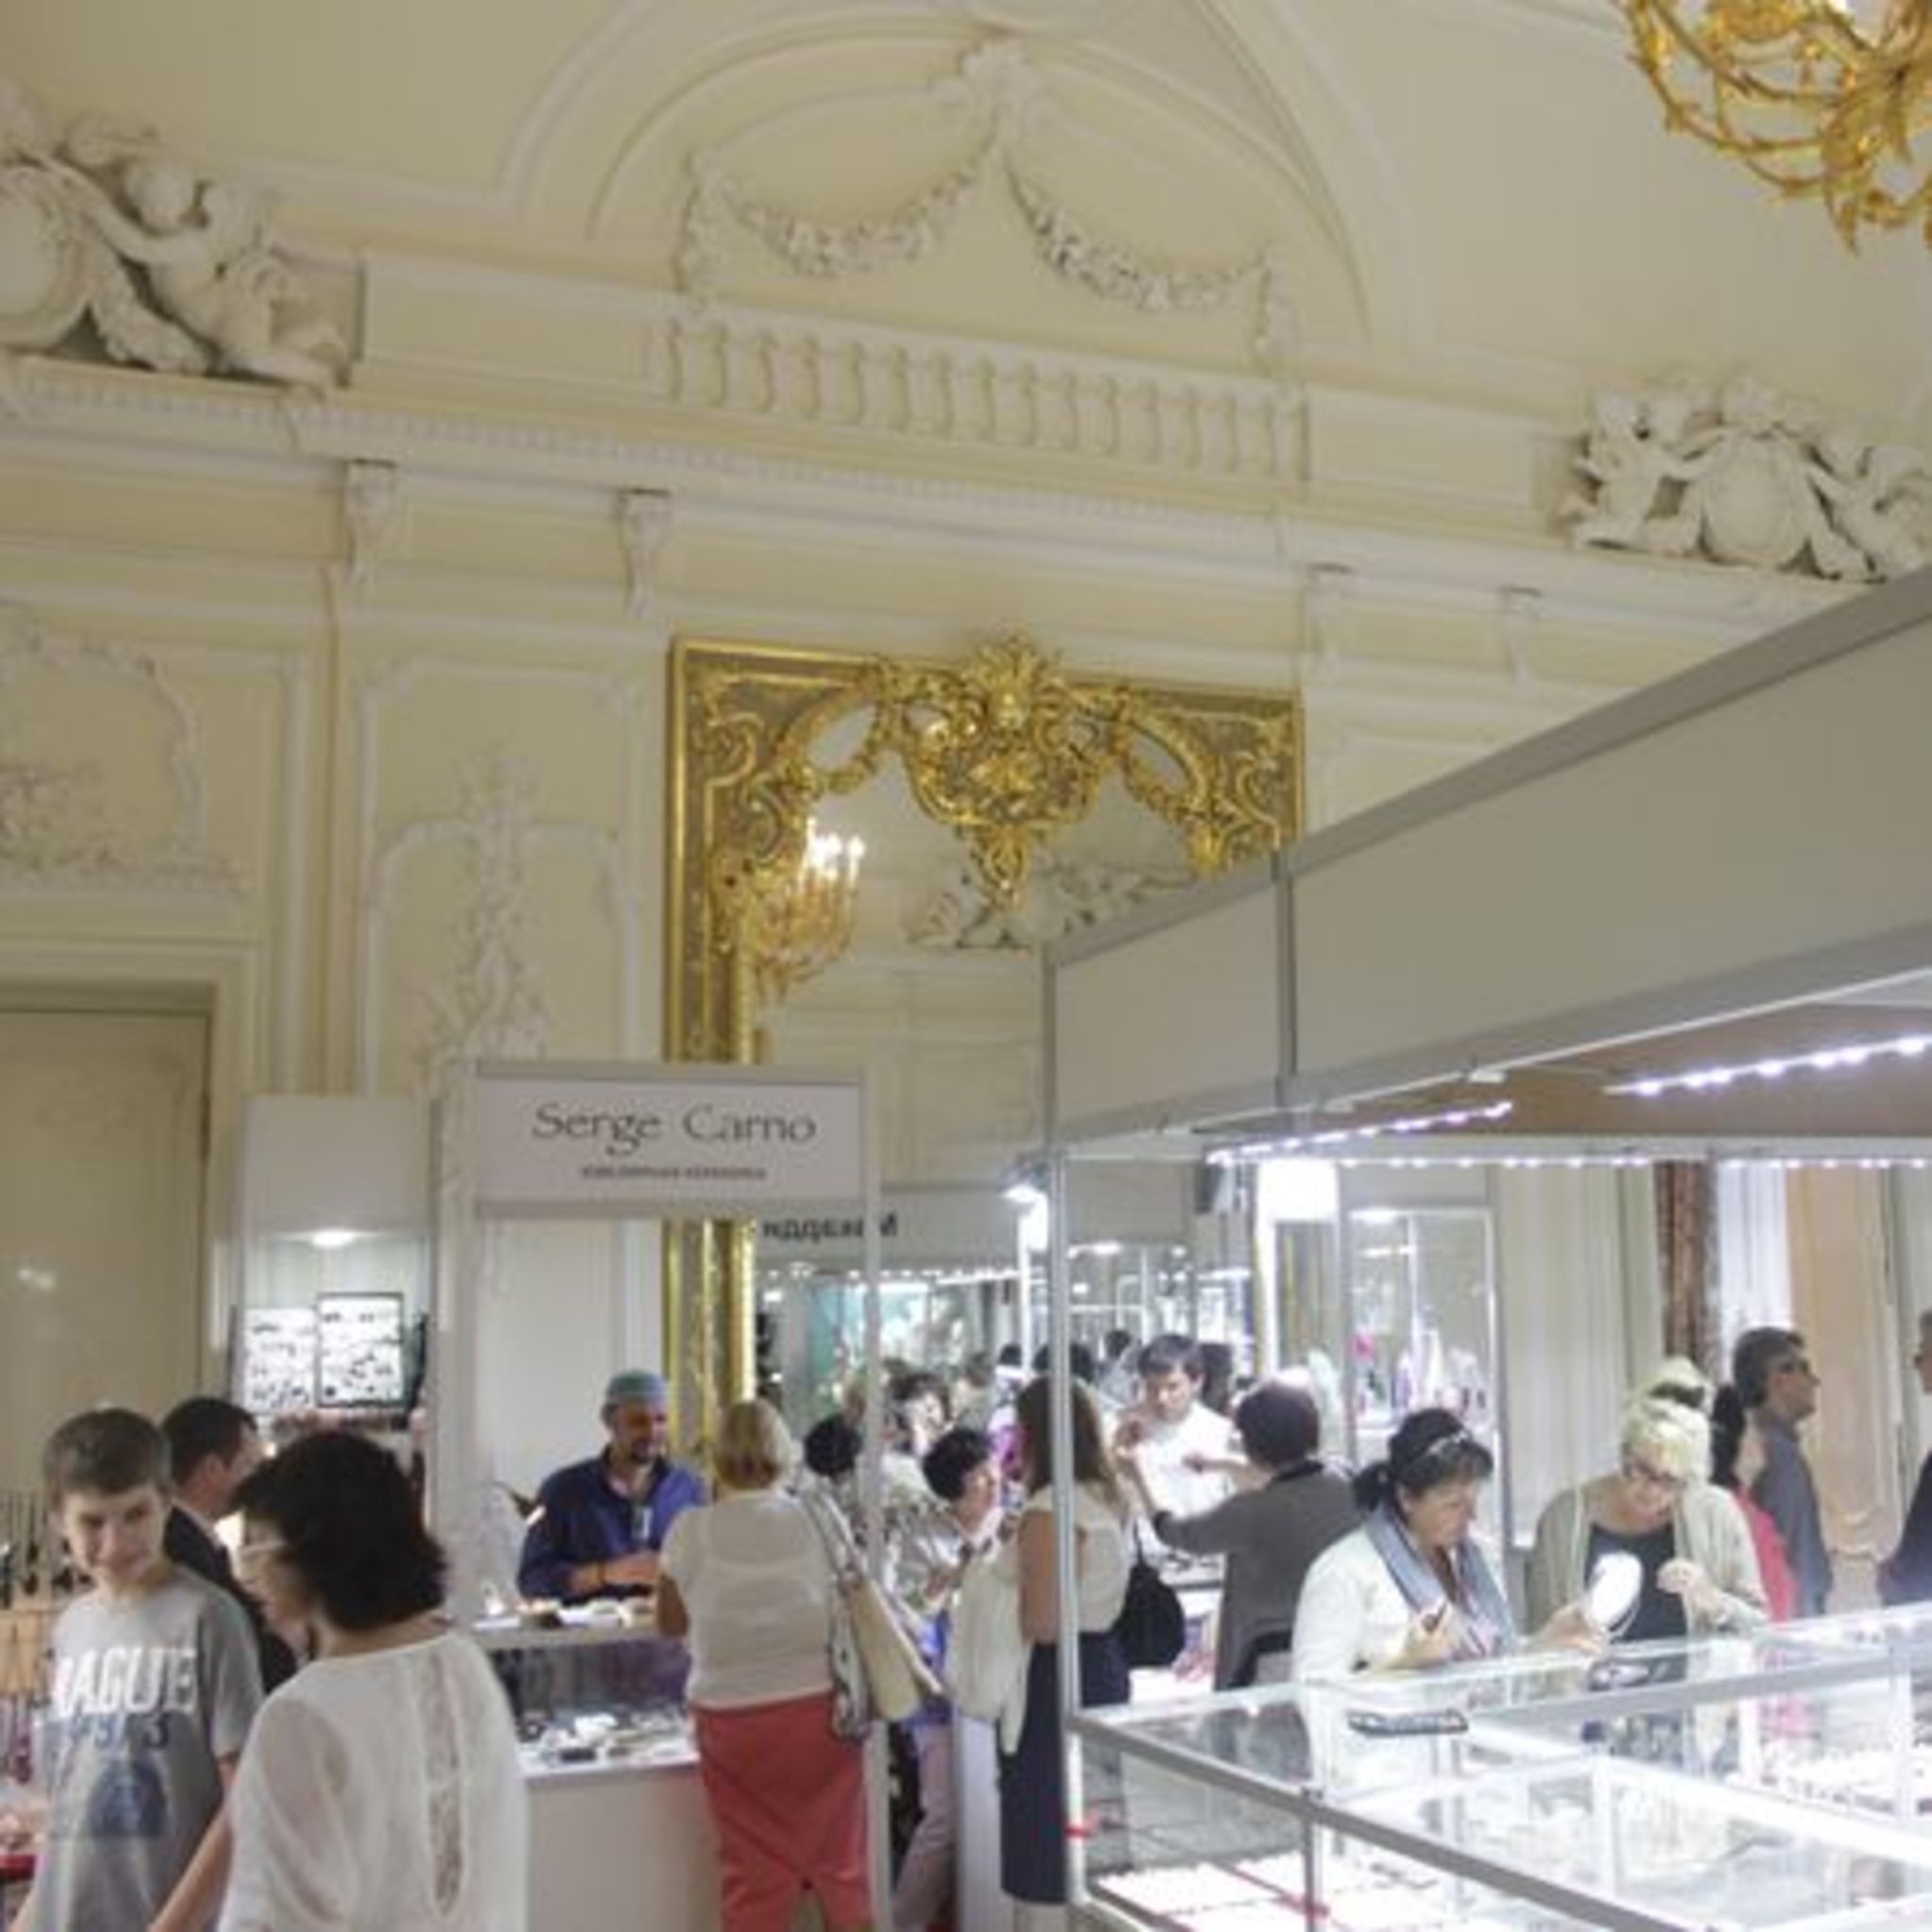 Jewellery exhibition Treasures of St. Petersburg